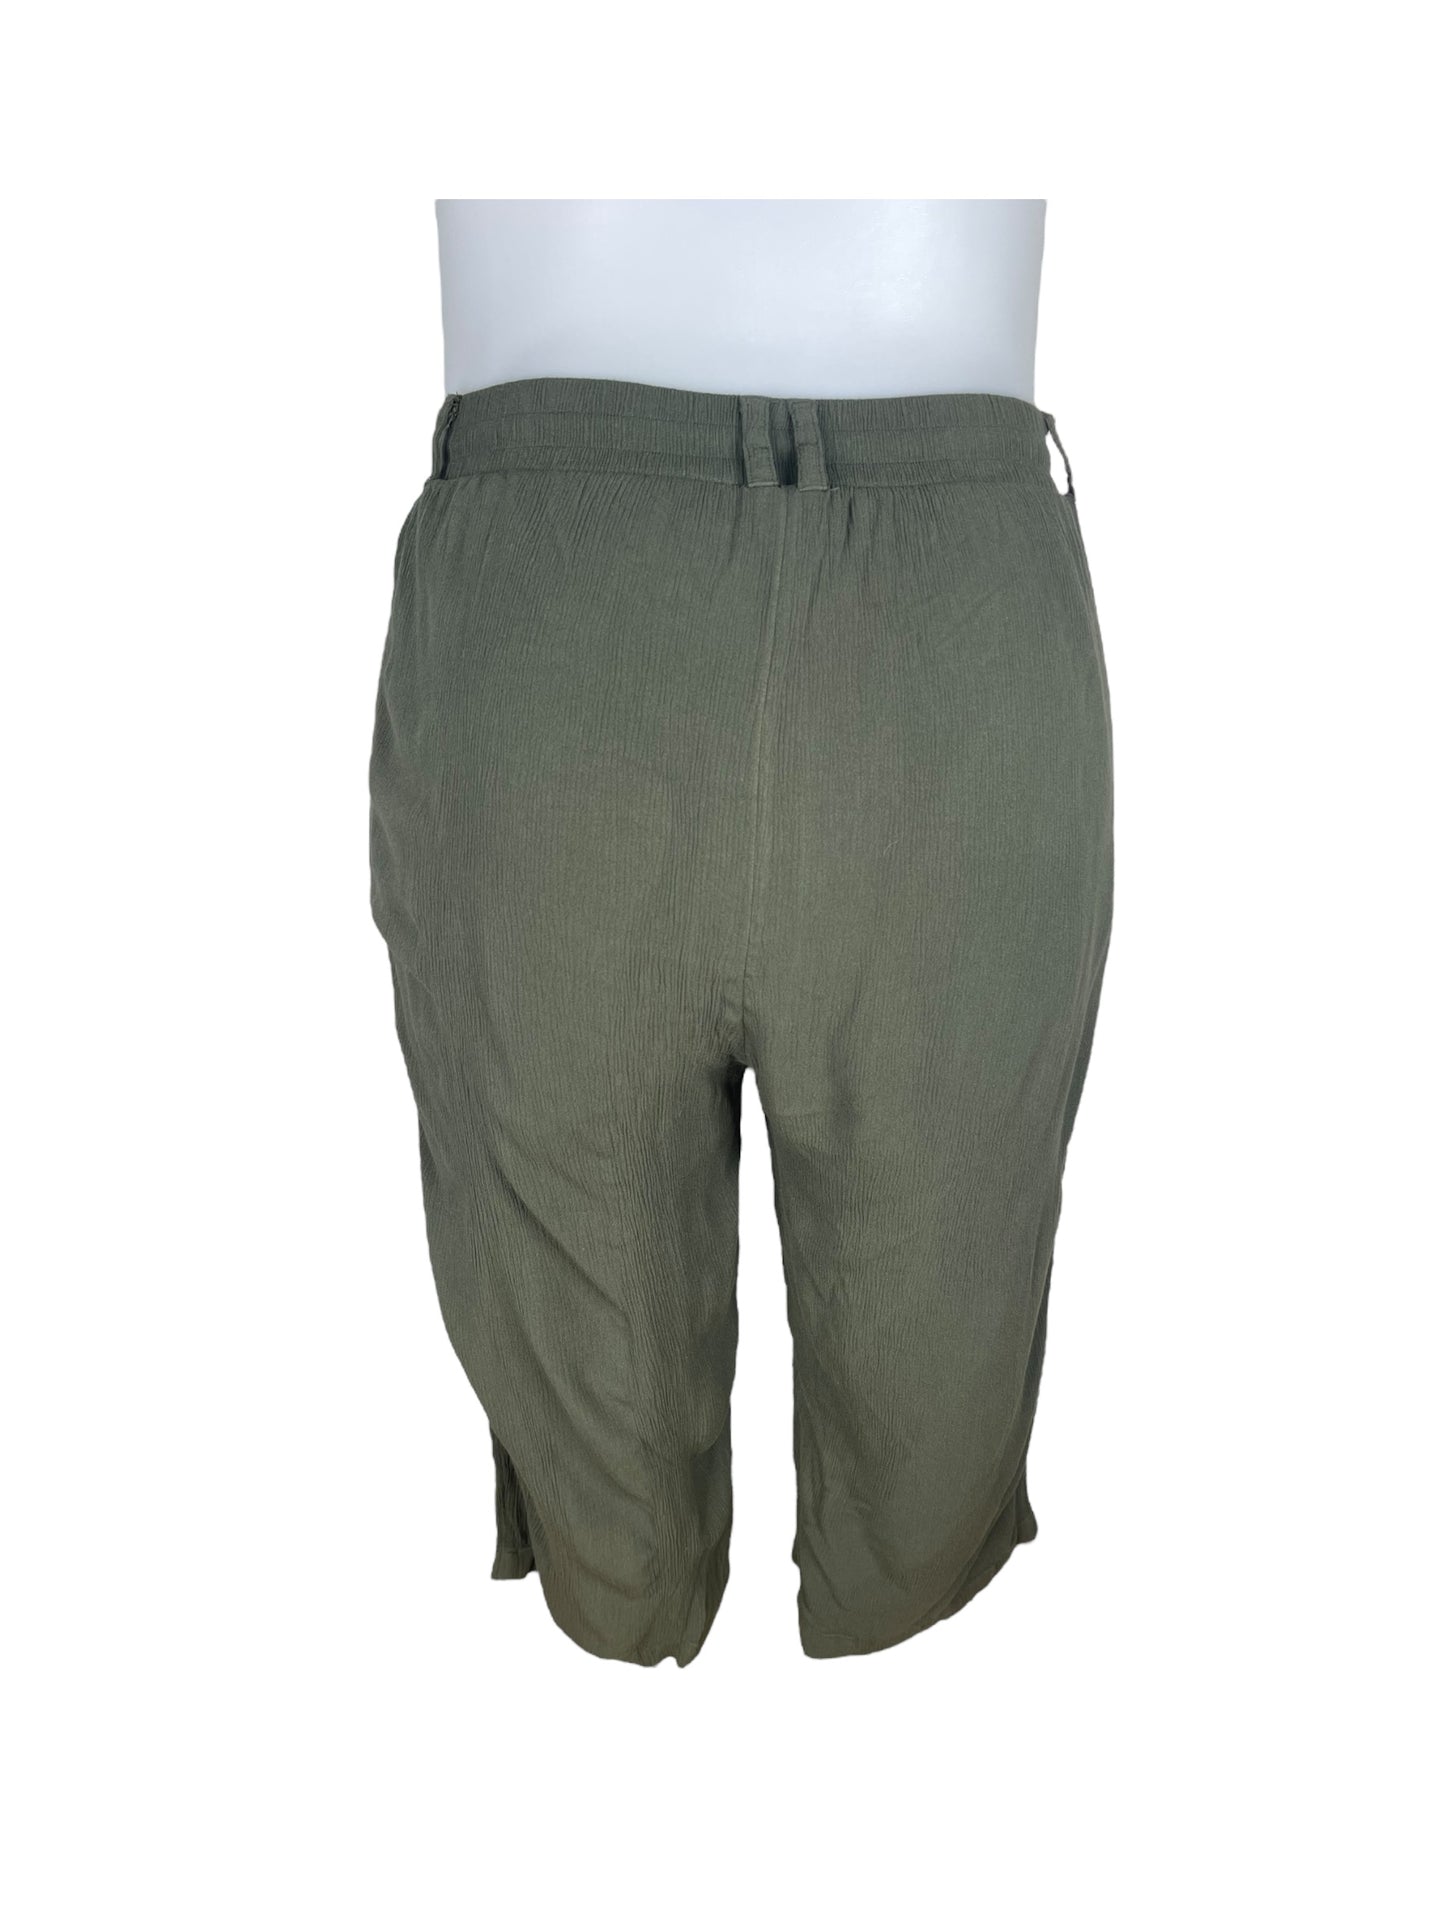 Dark Green Capri Pants (2)